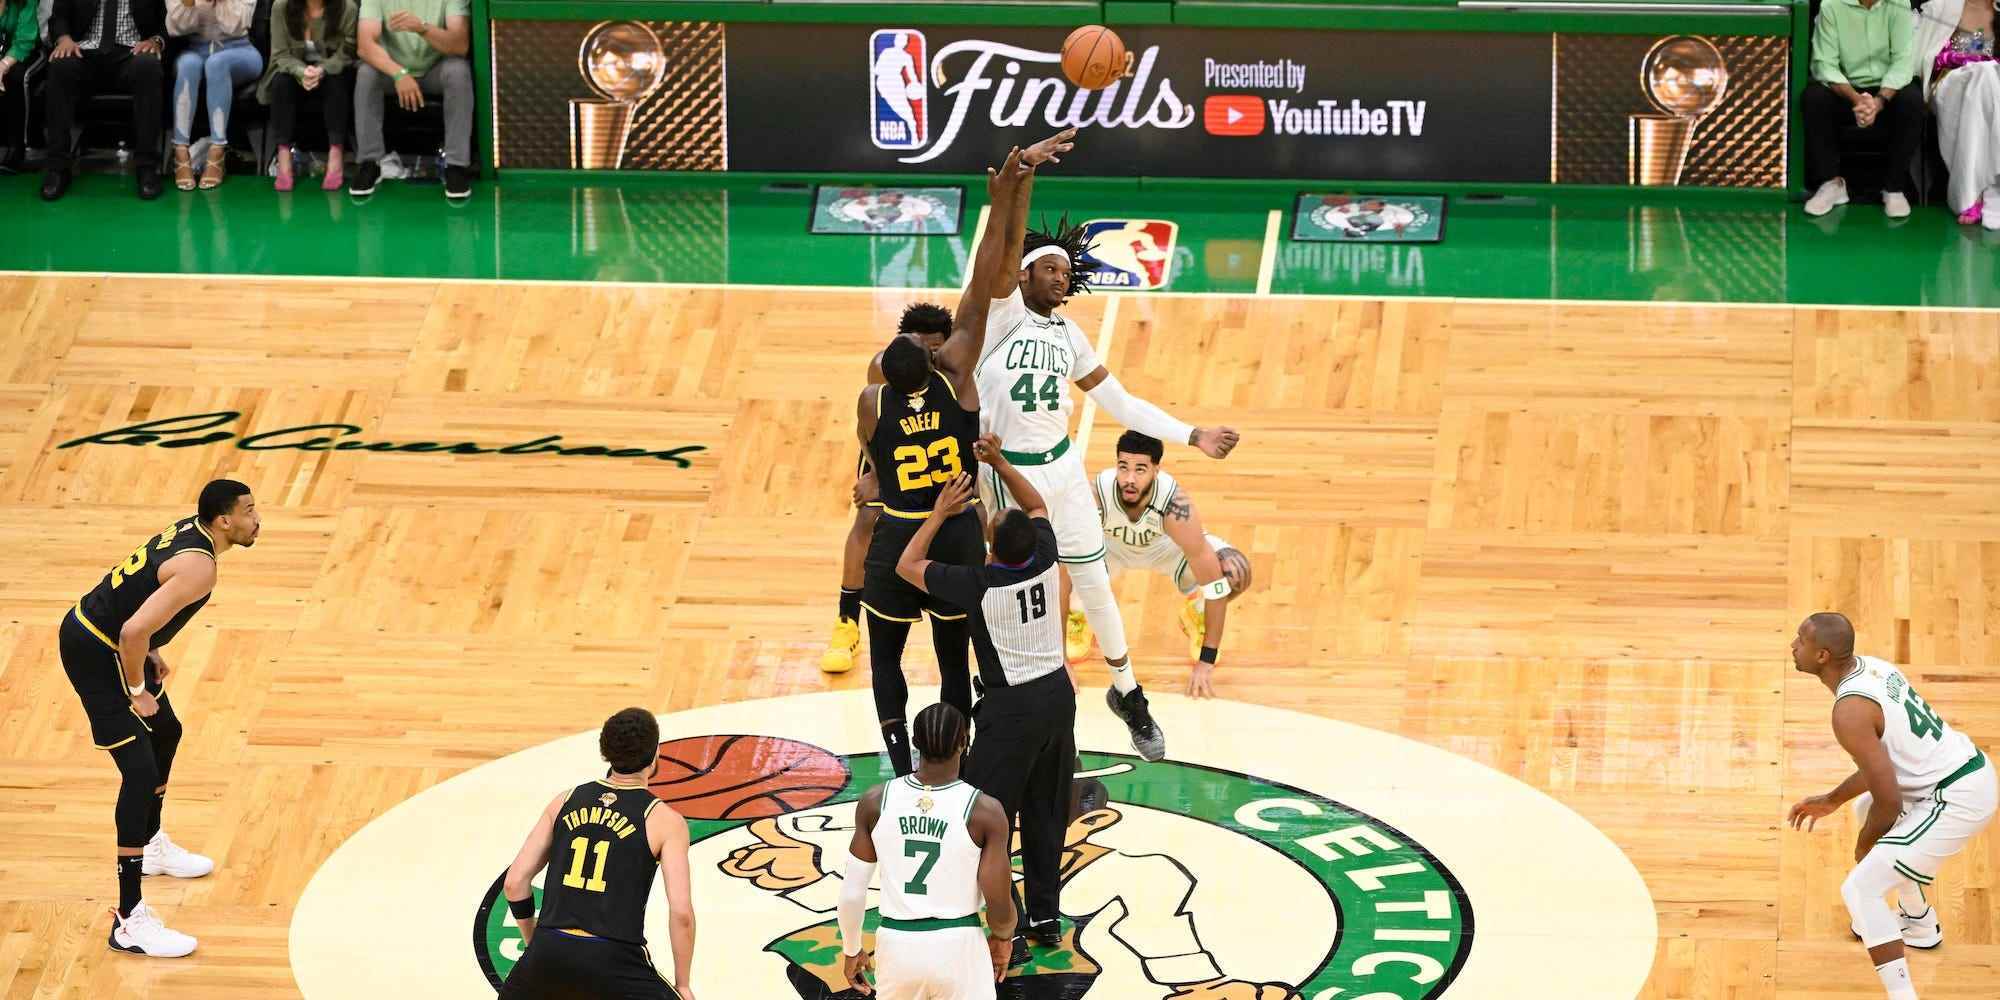 Die Warriors und Celtics springen zu Beginn eines NBA-Finalspiels in der Mitte des Spielfelds um den Ball.